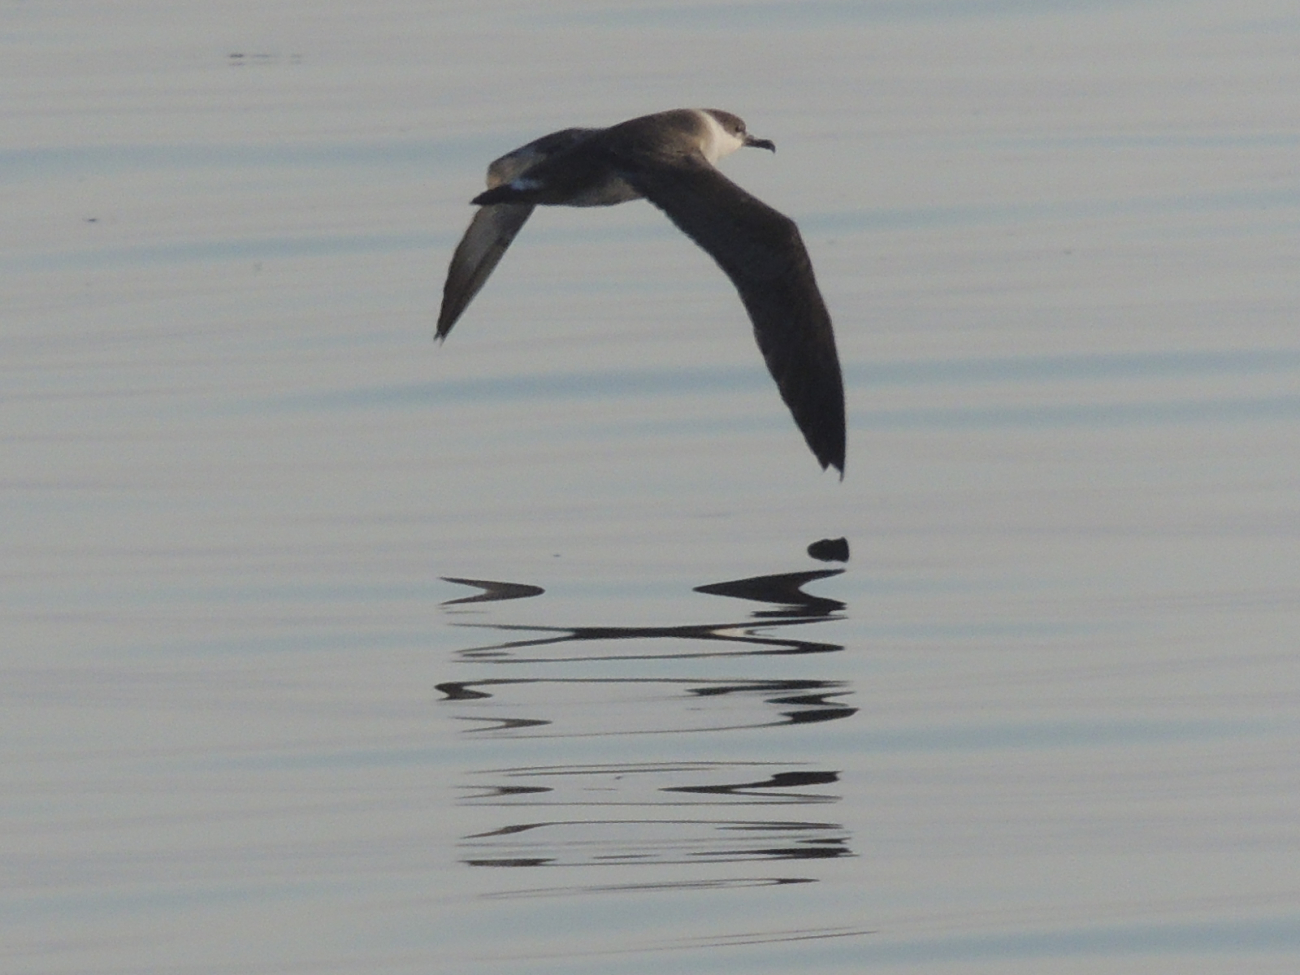 A shearwater in flight